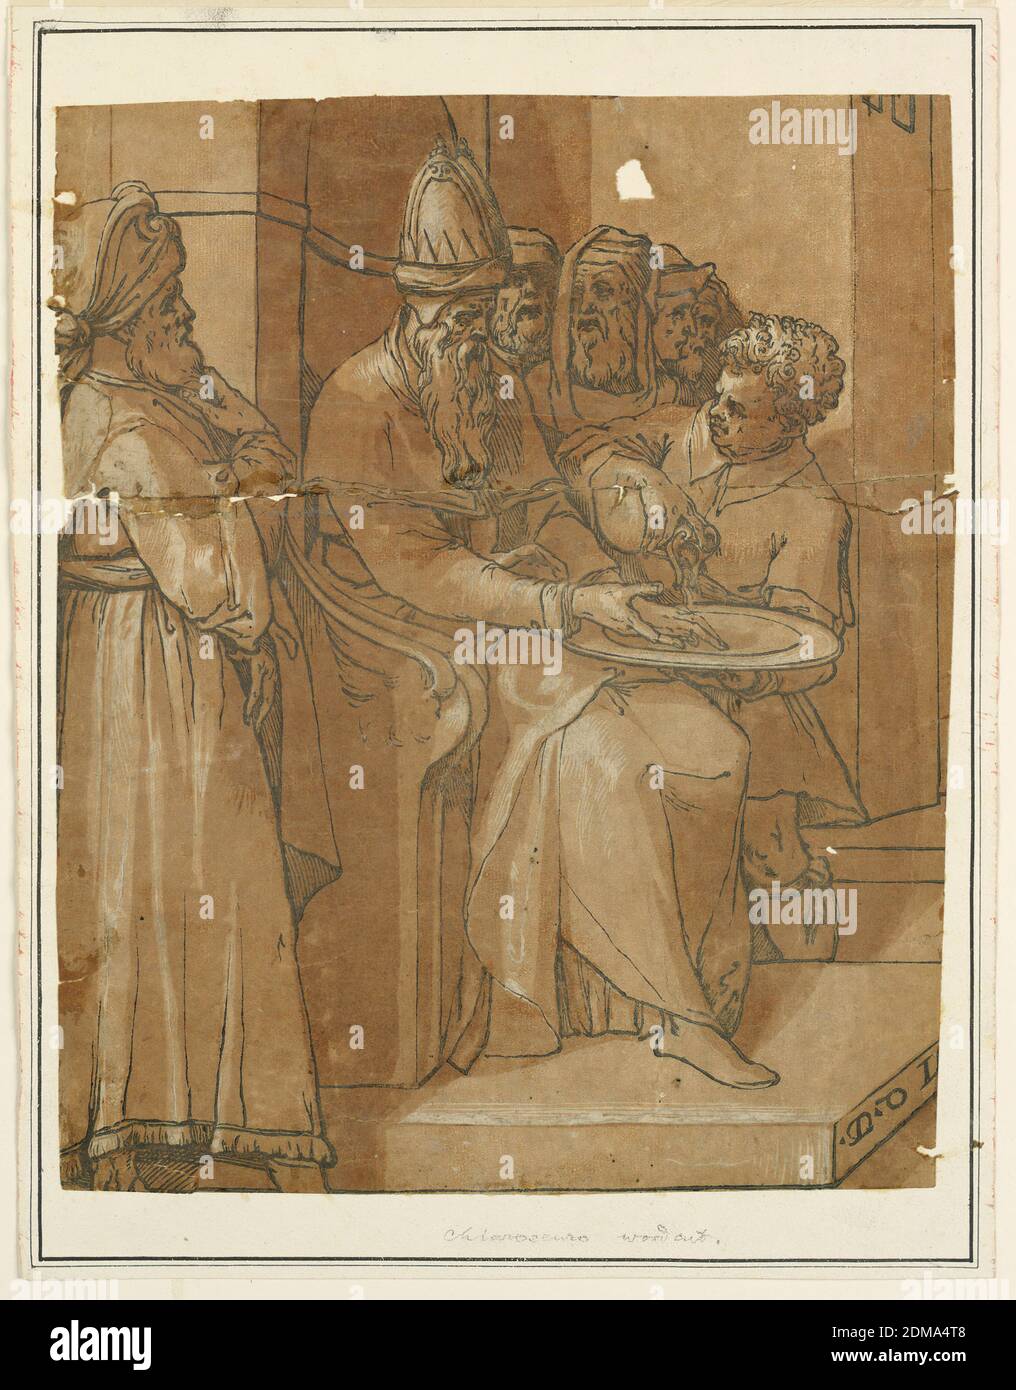 Pilatus beim Händewaschen, Chiaroscuro Holzschnitt auf Papier, Pilatus beim Händewaschen., Italien, 16. Jahrhundert, Druck Stockfoto